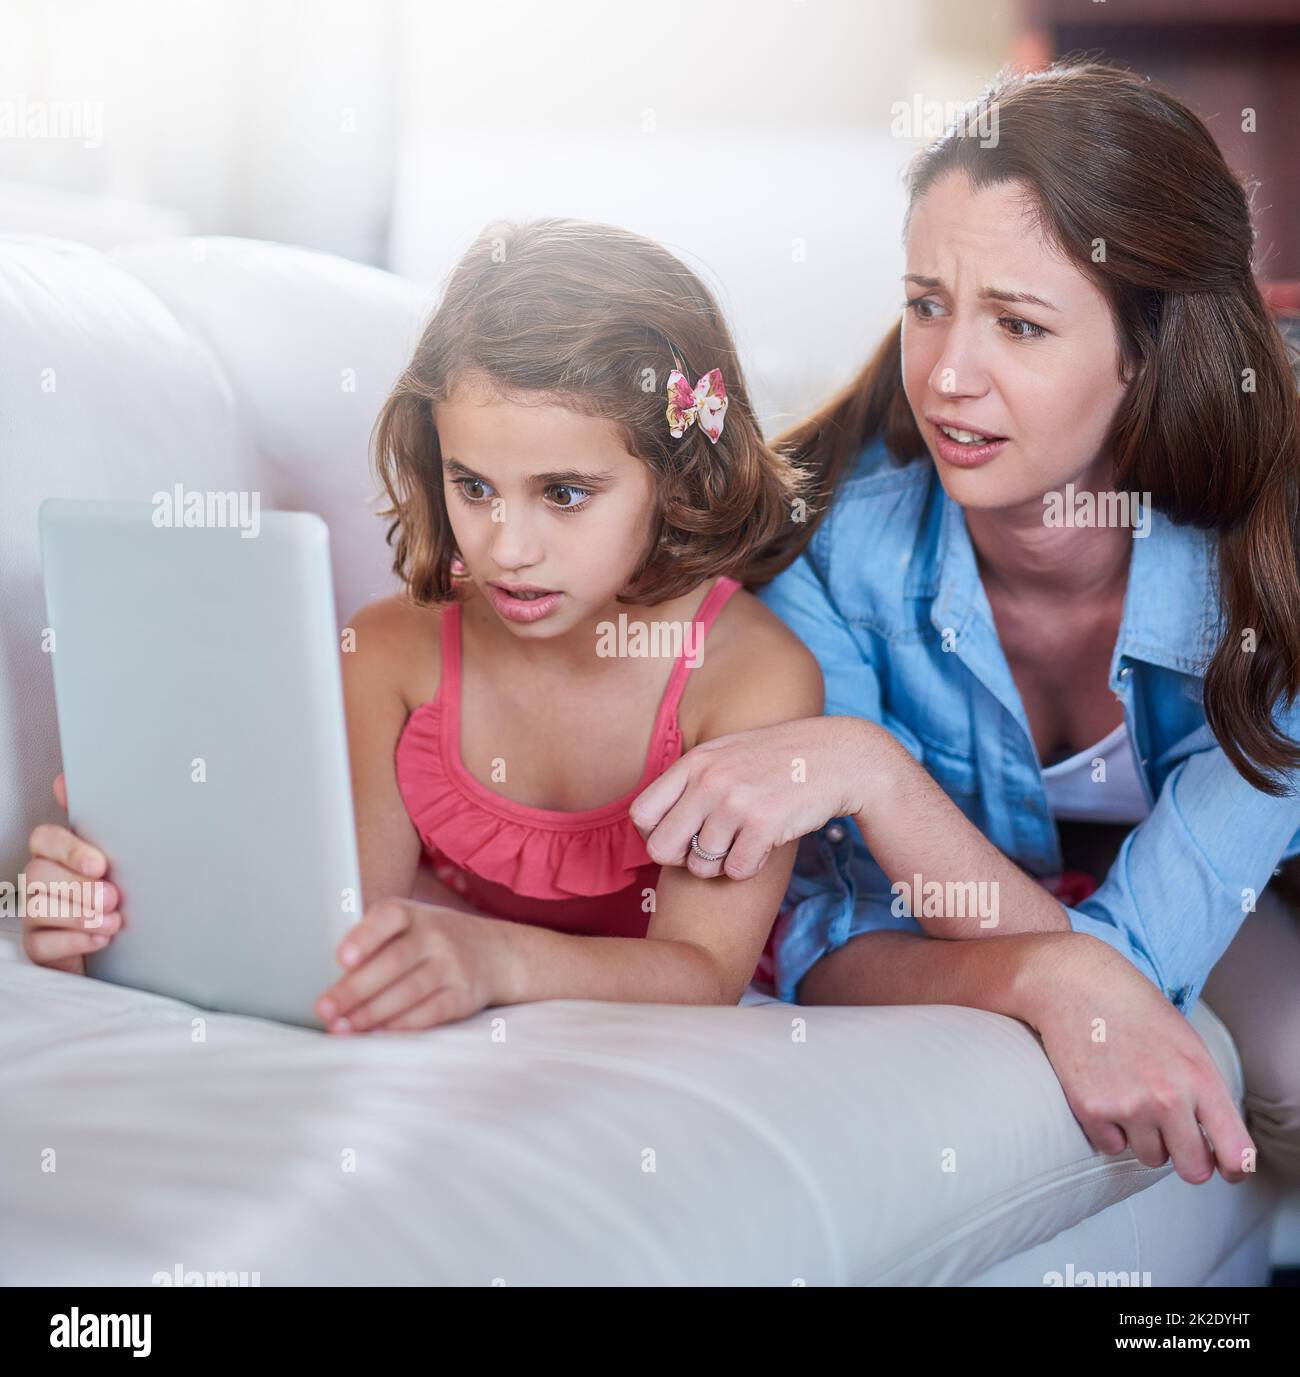 Vergessen Sie nicht, sicher zu suchen. Zugeschnittene Aufnahme einer Mutter und ihrer Tochter, die zu Hause Wireless-Technologie verwendet. Stockfoto